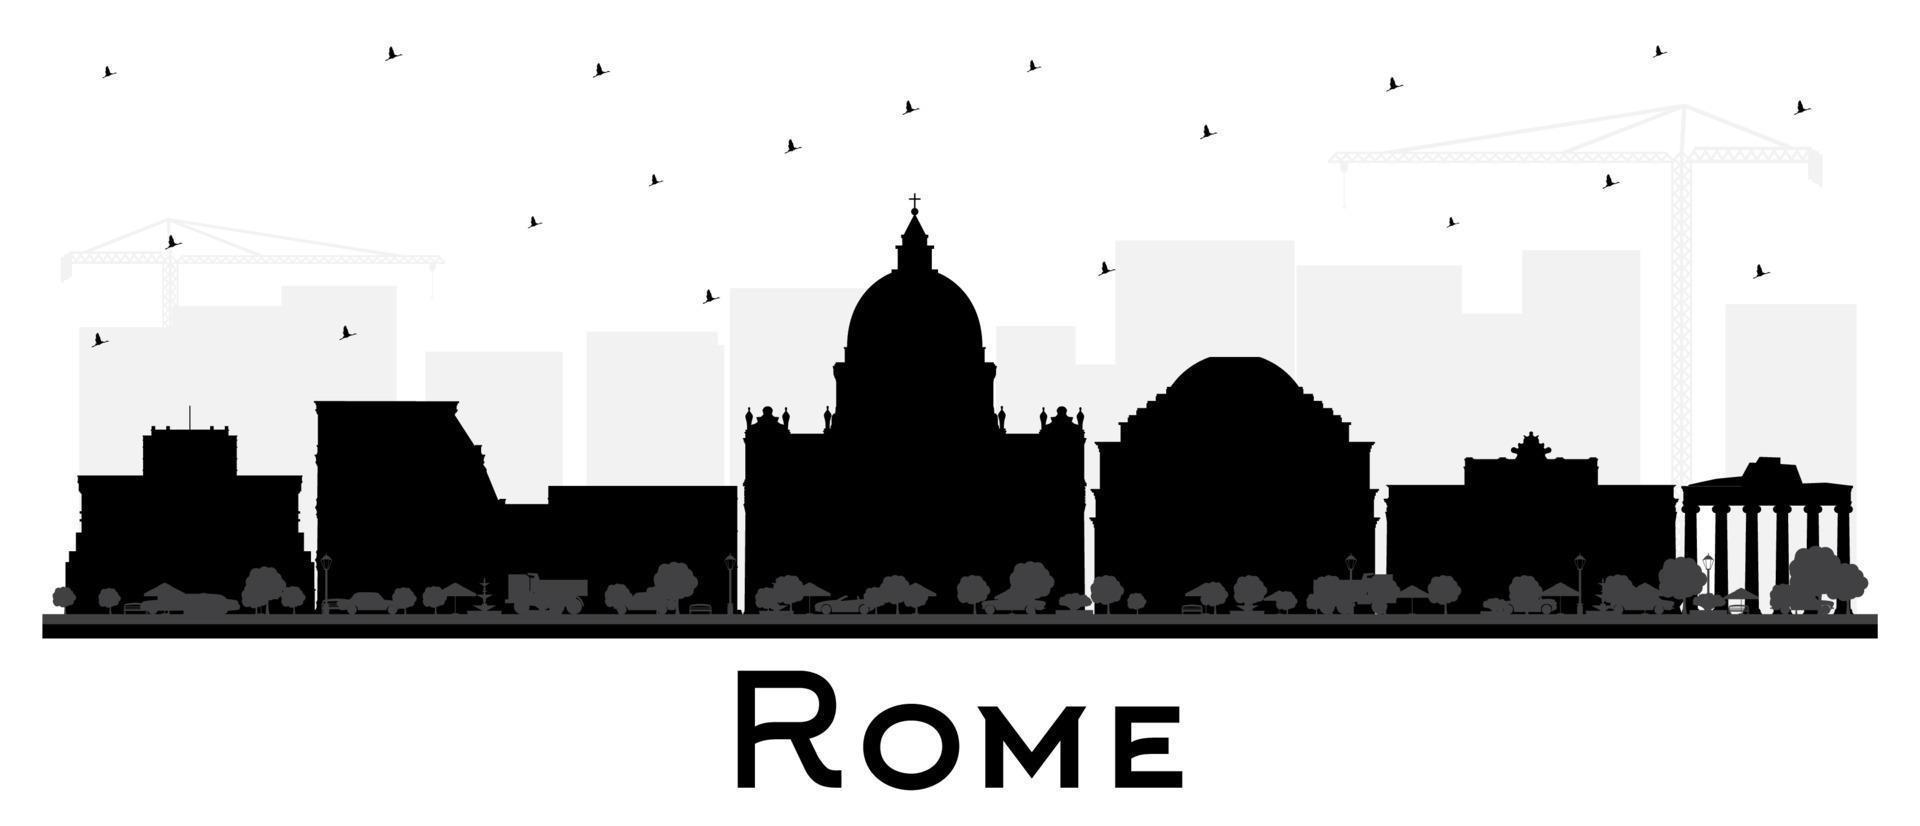 rom italien stadtsilhouette mit schwarzen gebäuden isoliert auf weiß. vektor